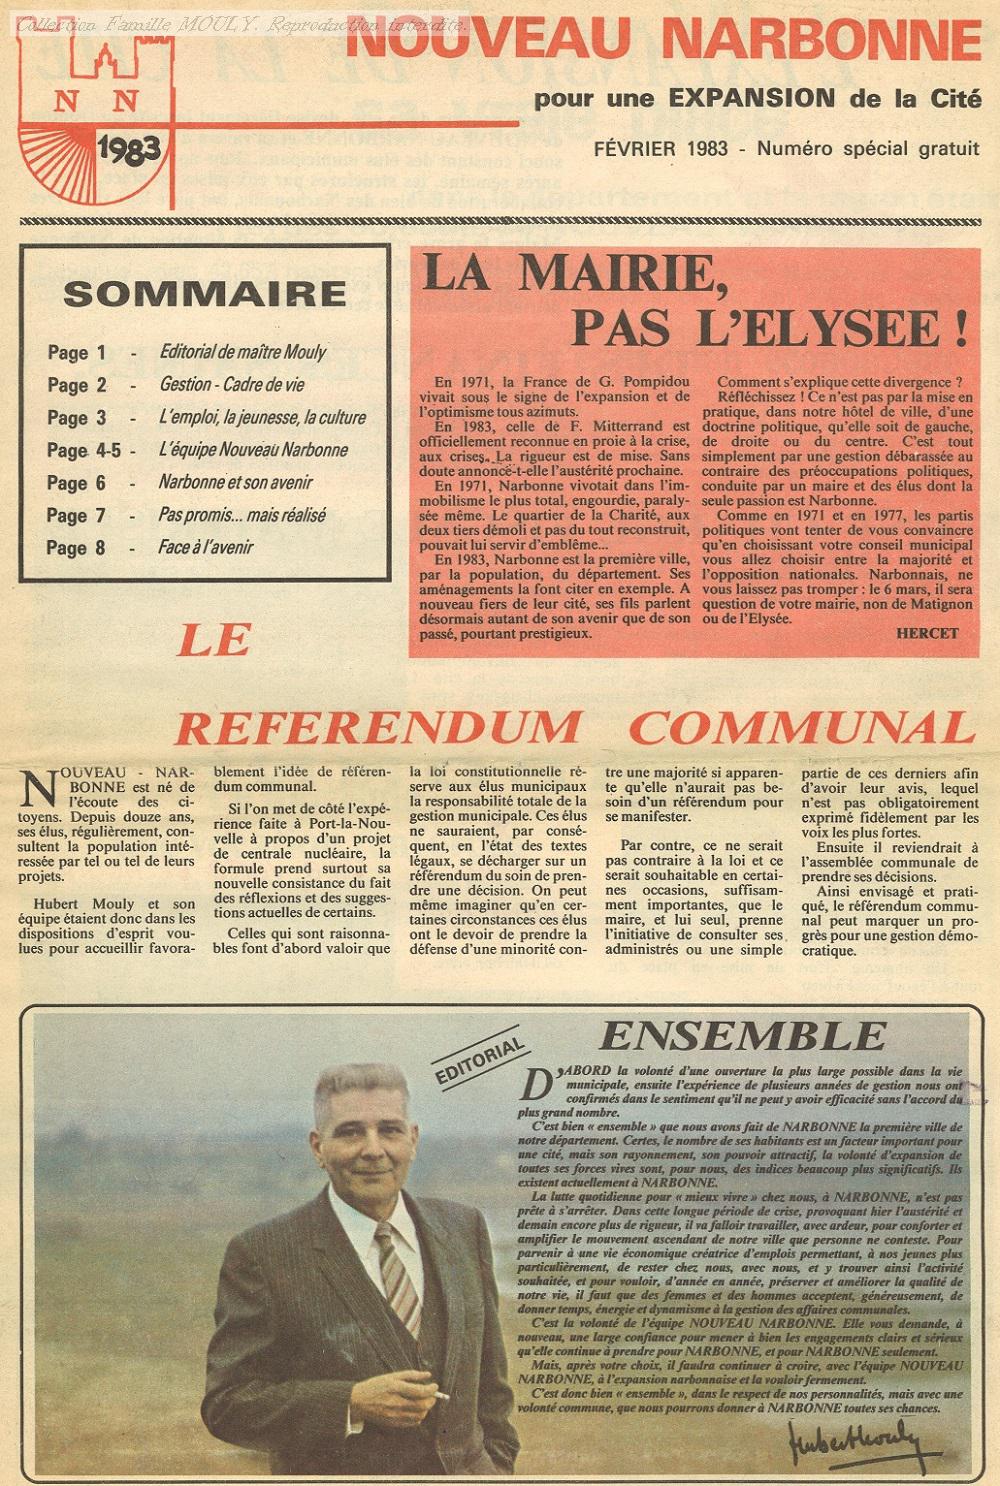 Bulletin NOUVEAU NARBONNE février 1983, bulletin de campagne.